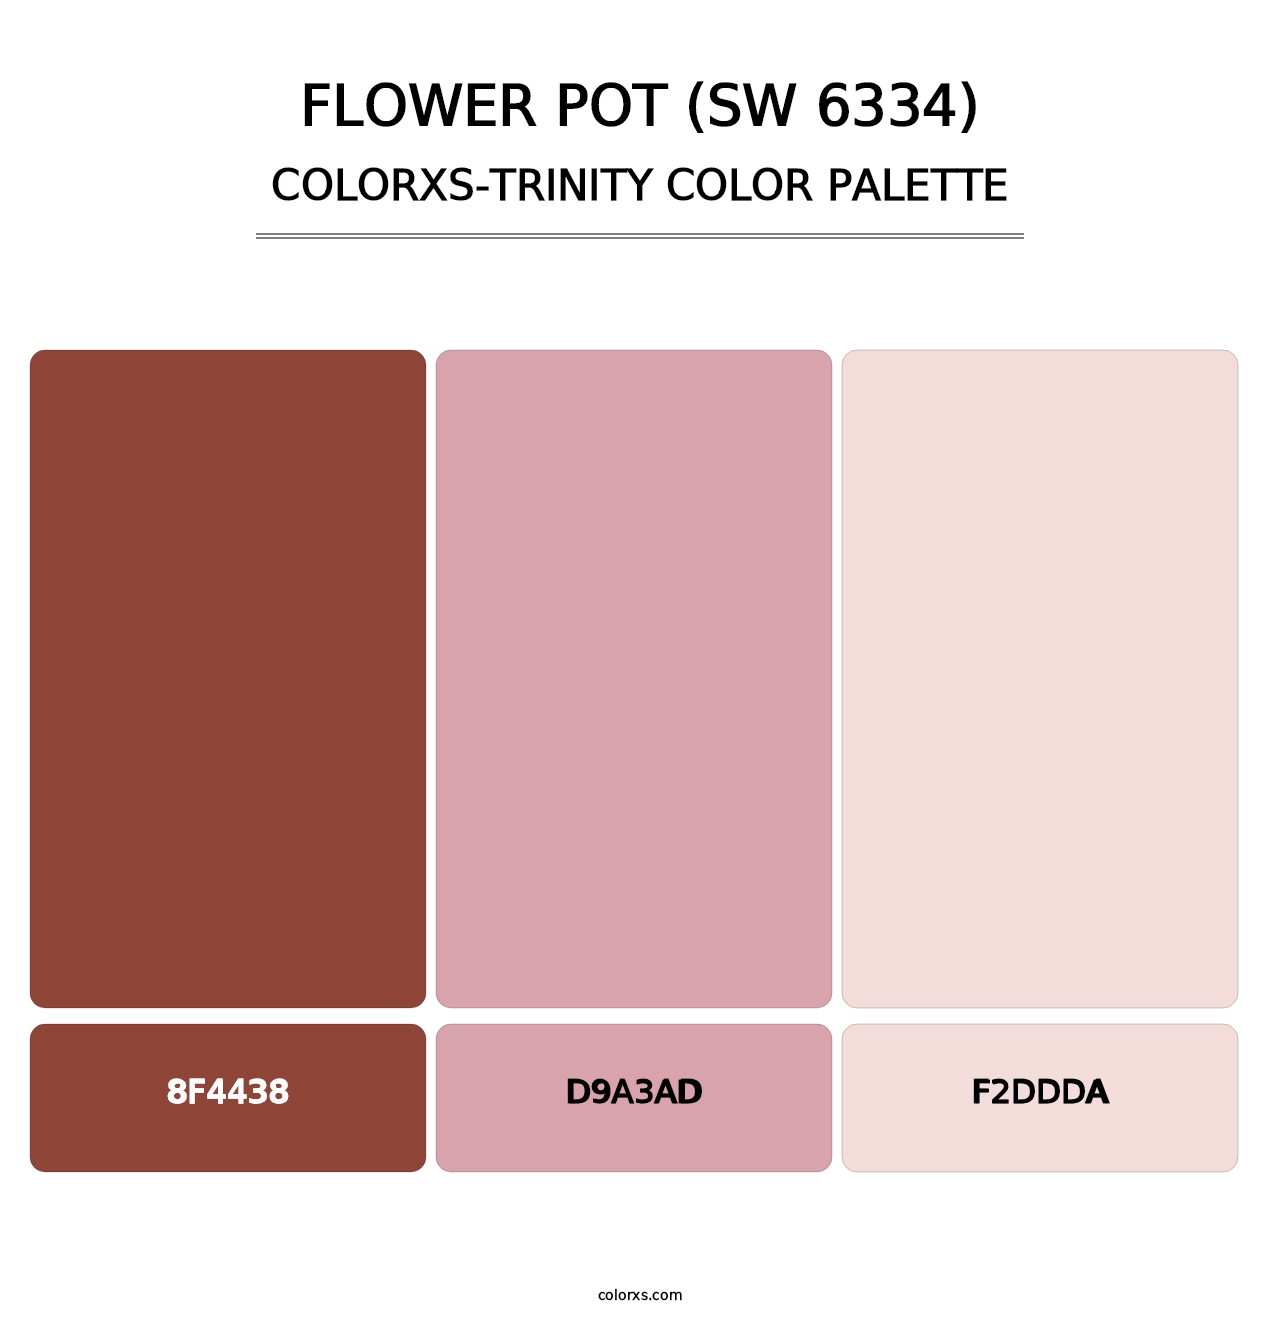 Flower Pot (SW 6334) - Colorxs Trinity Palette